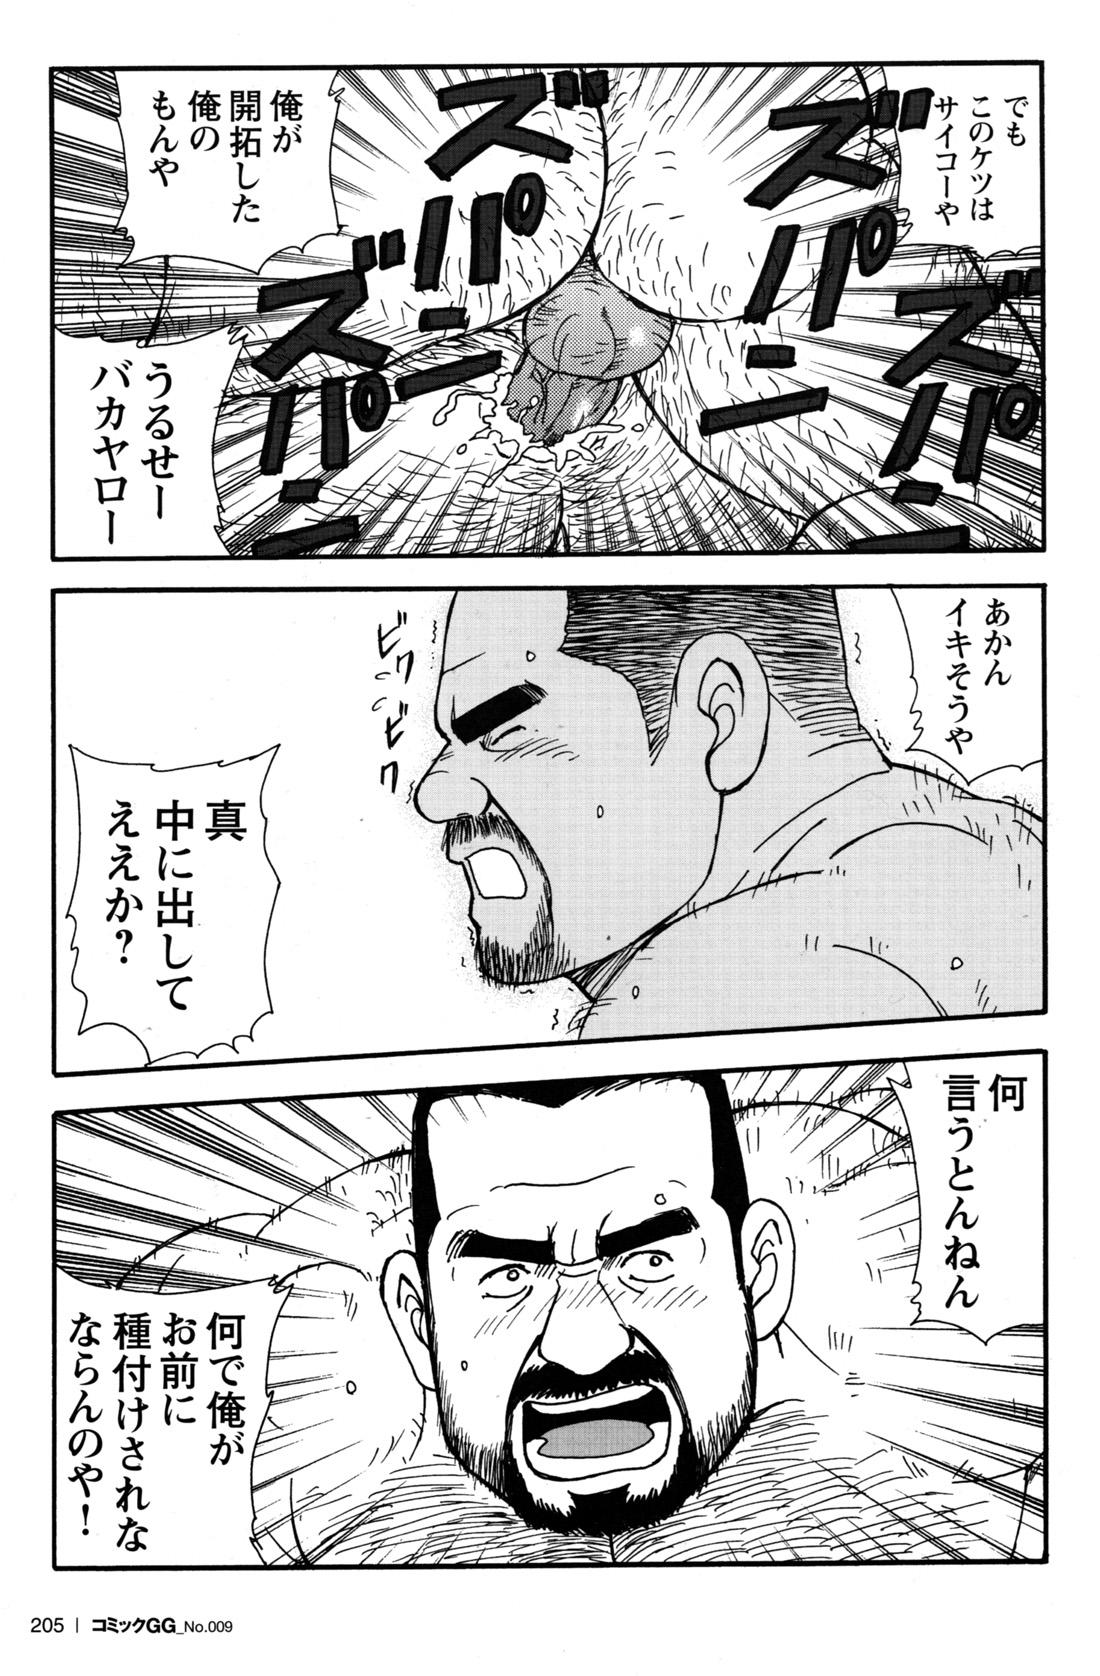 Comic G-men Gaho No.09 Gacchibi Zeme 187